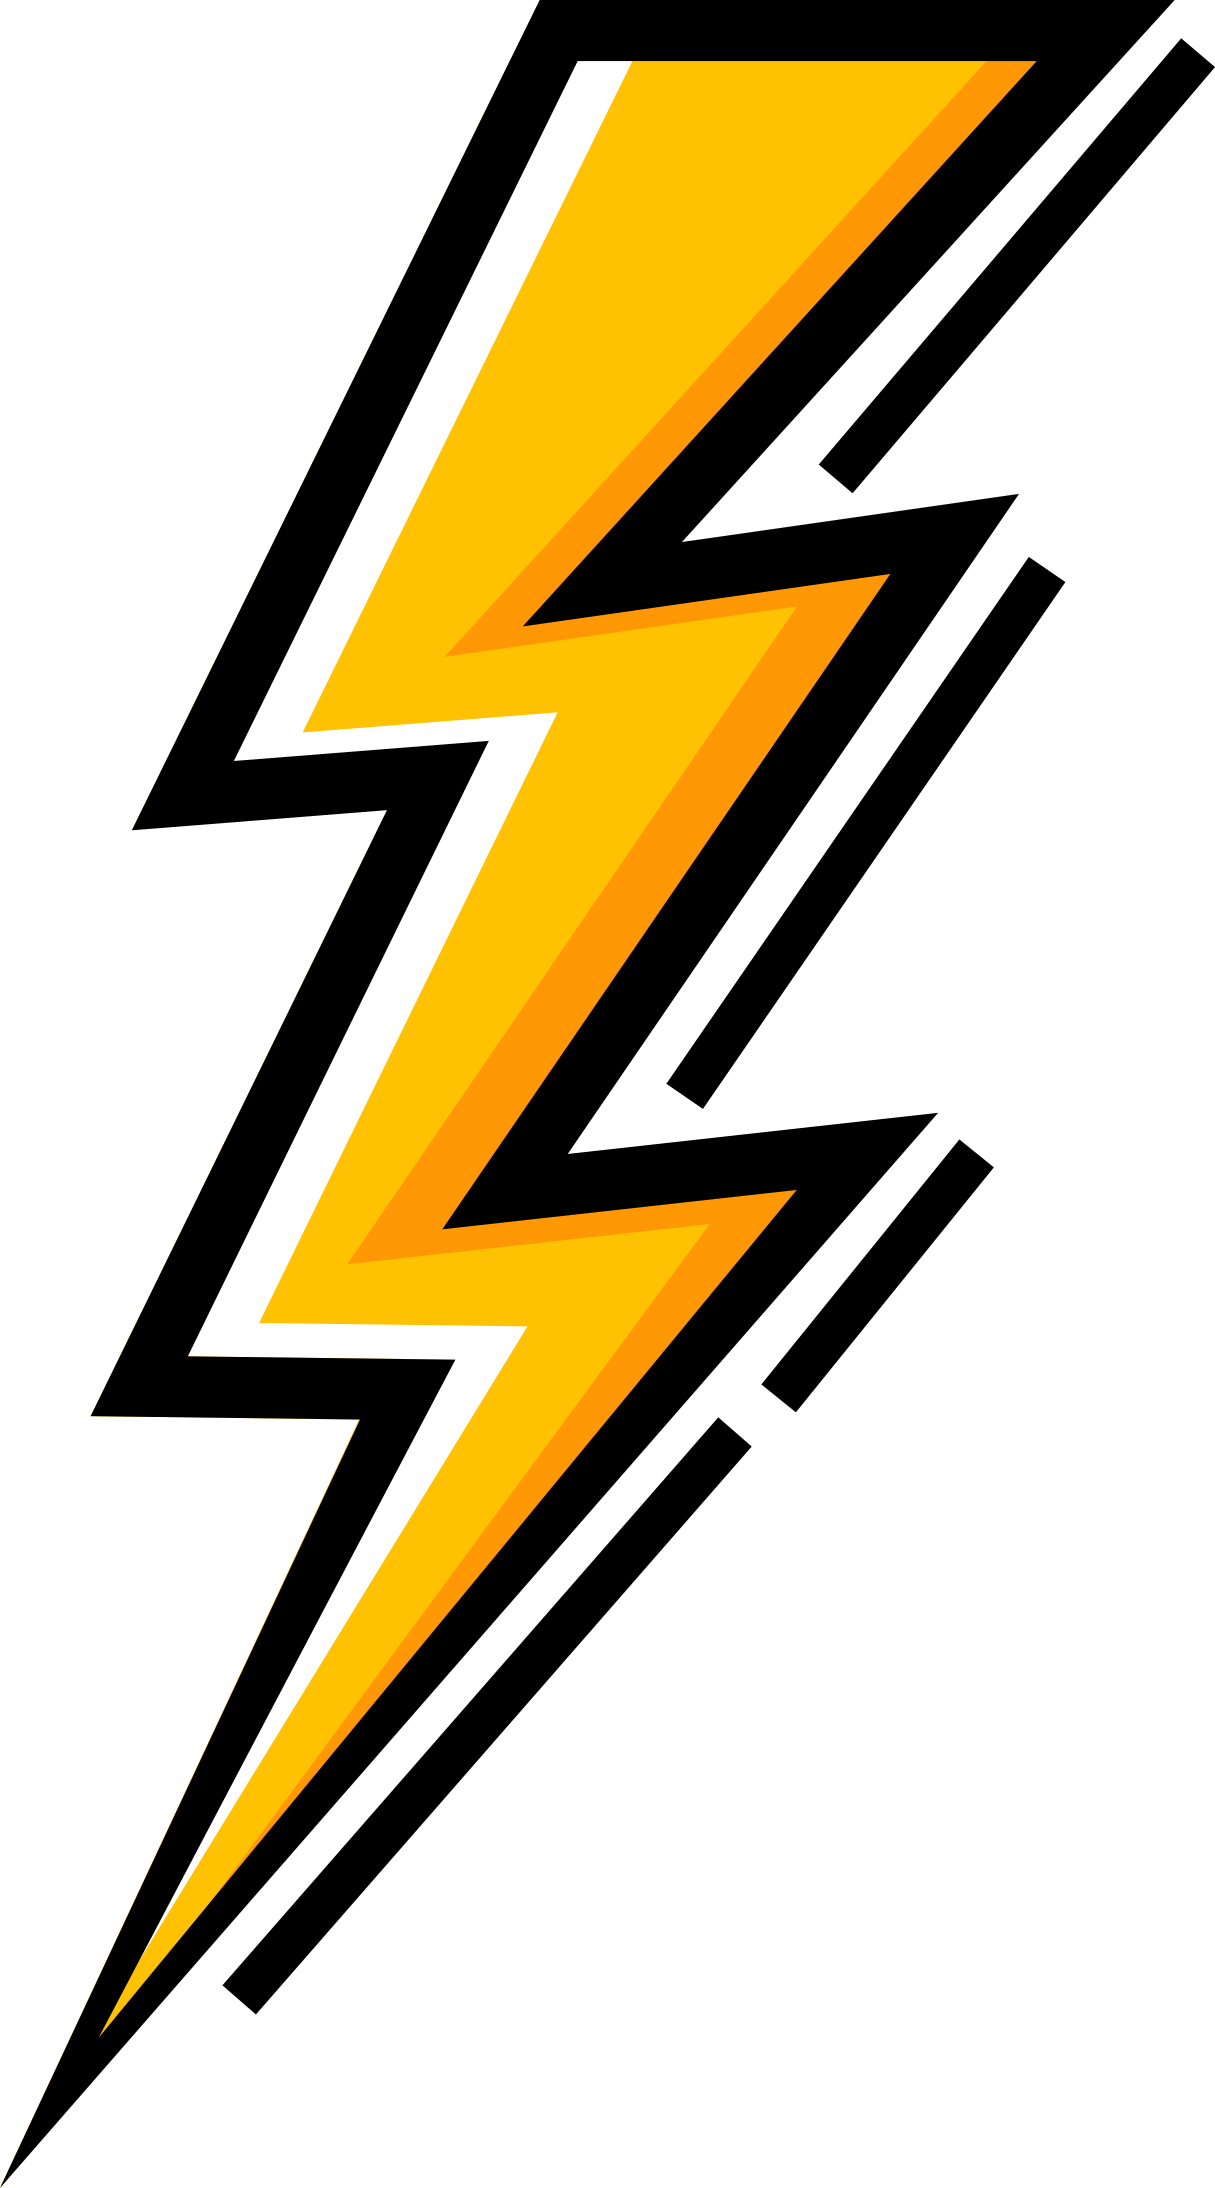 Lightning Bolt PNG Image in Transparent pngteam.com